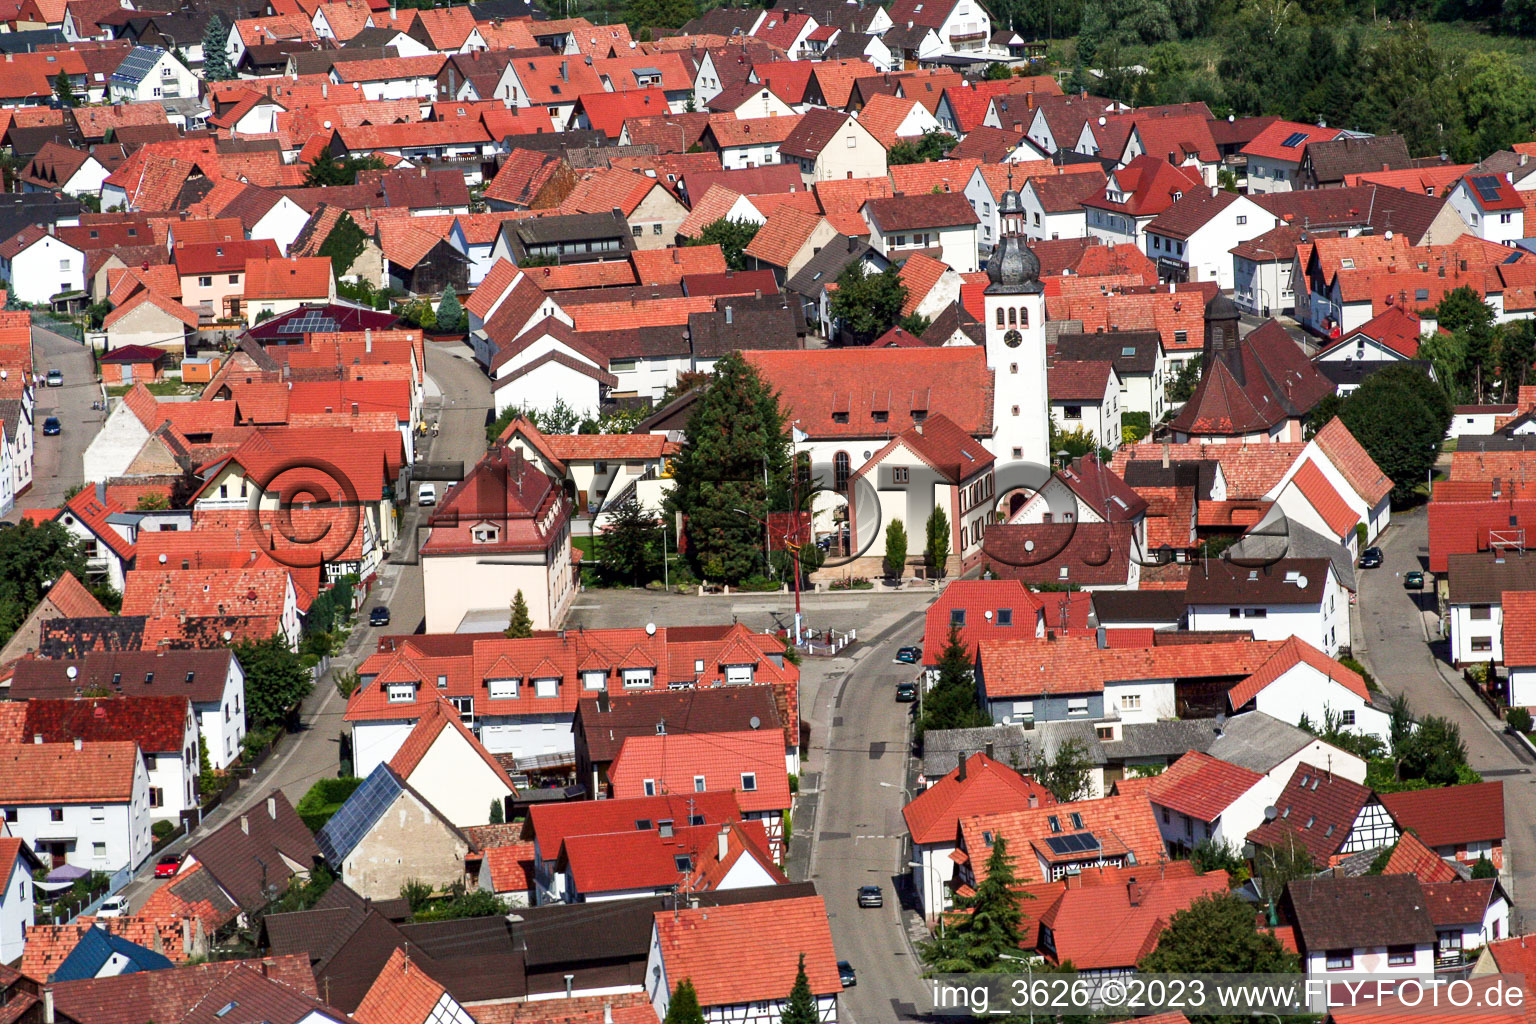 Neuburg dans le département Rhénanie-Palatinat, Allemagne vu d'un drone